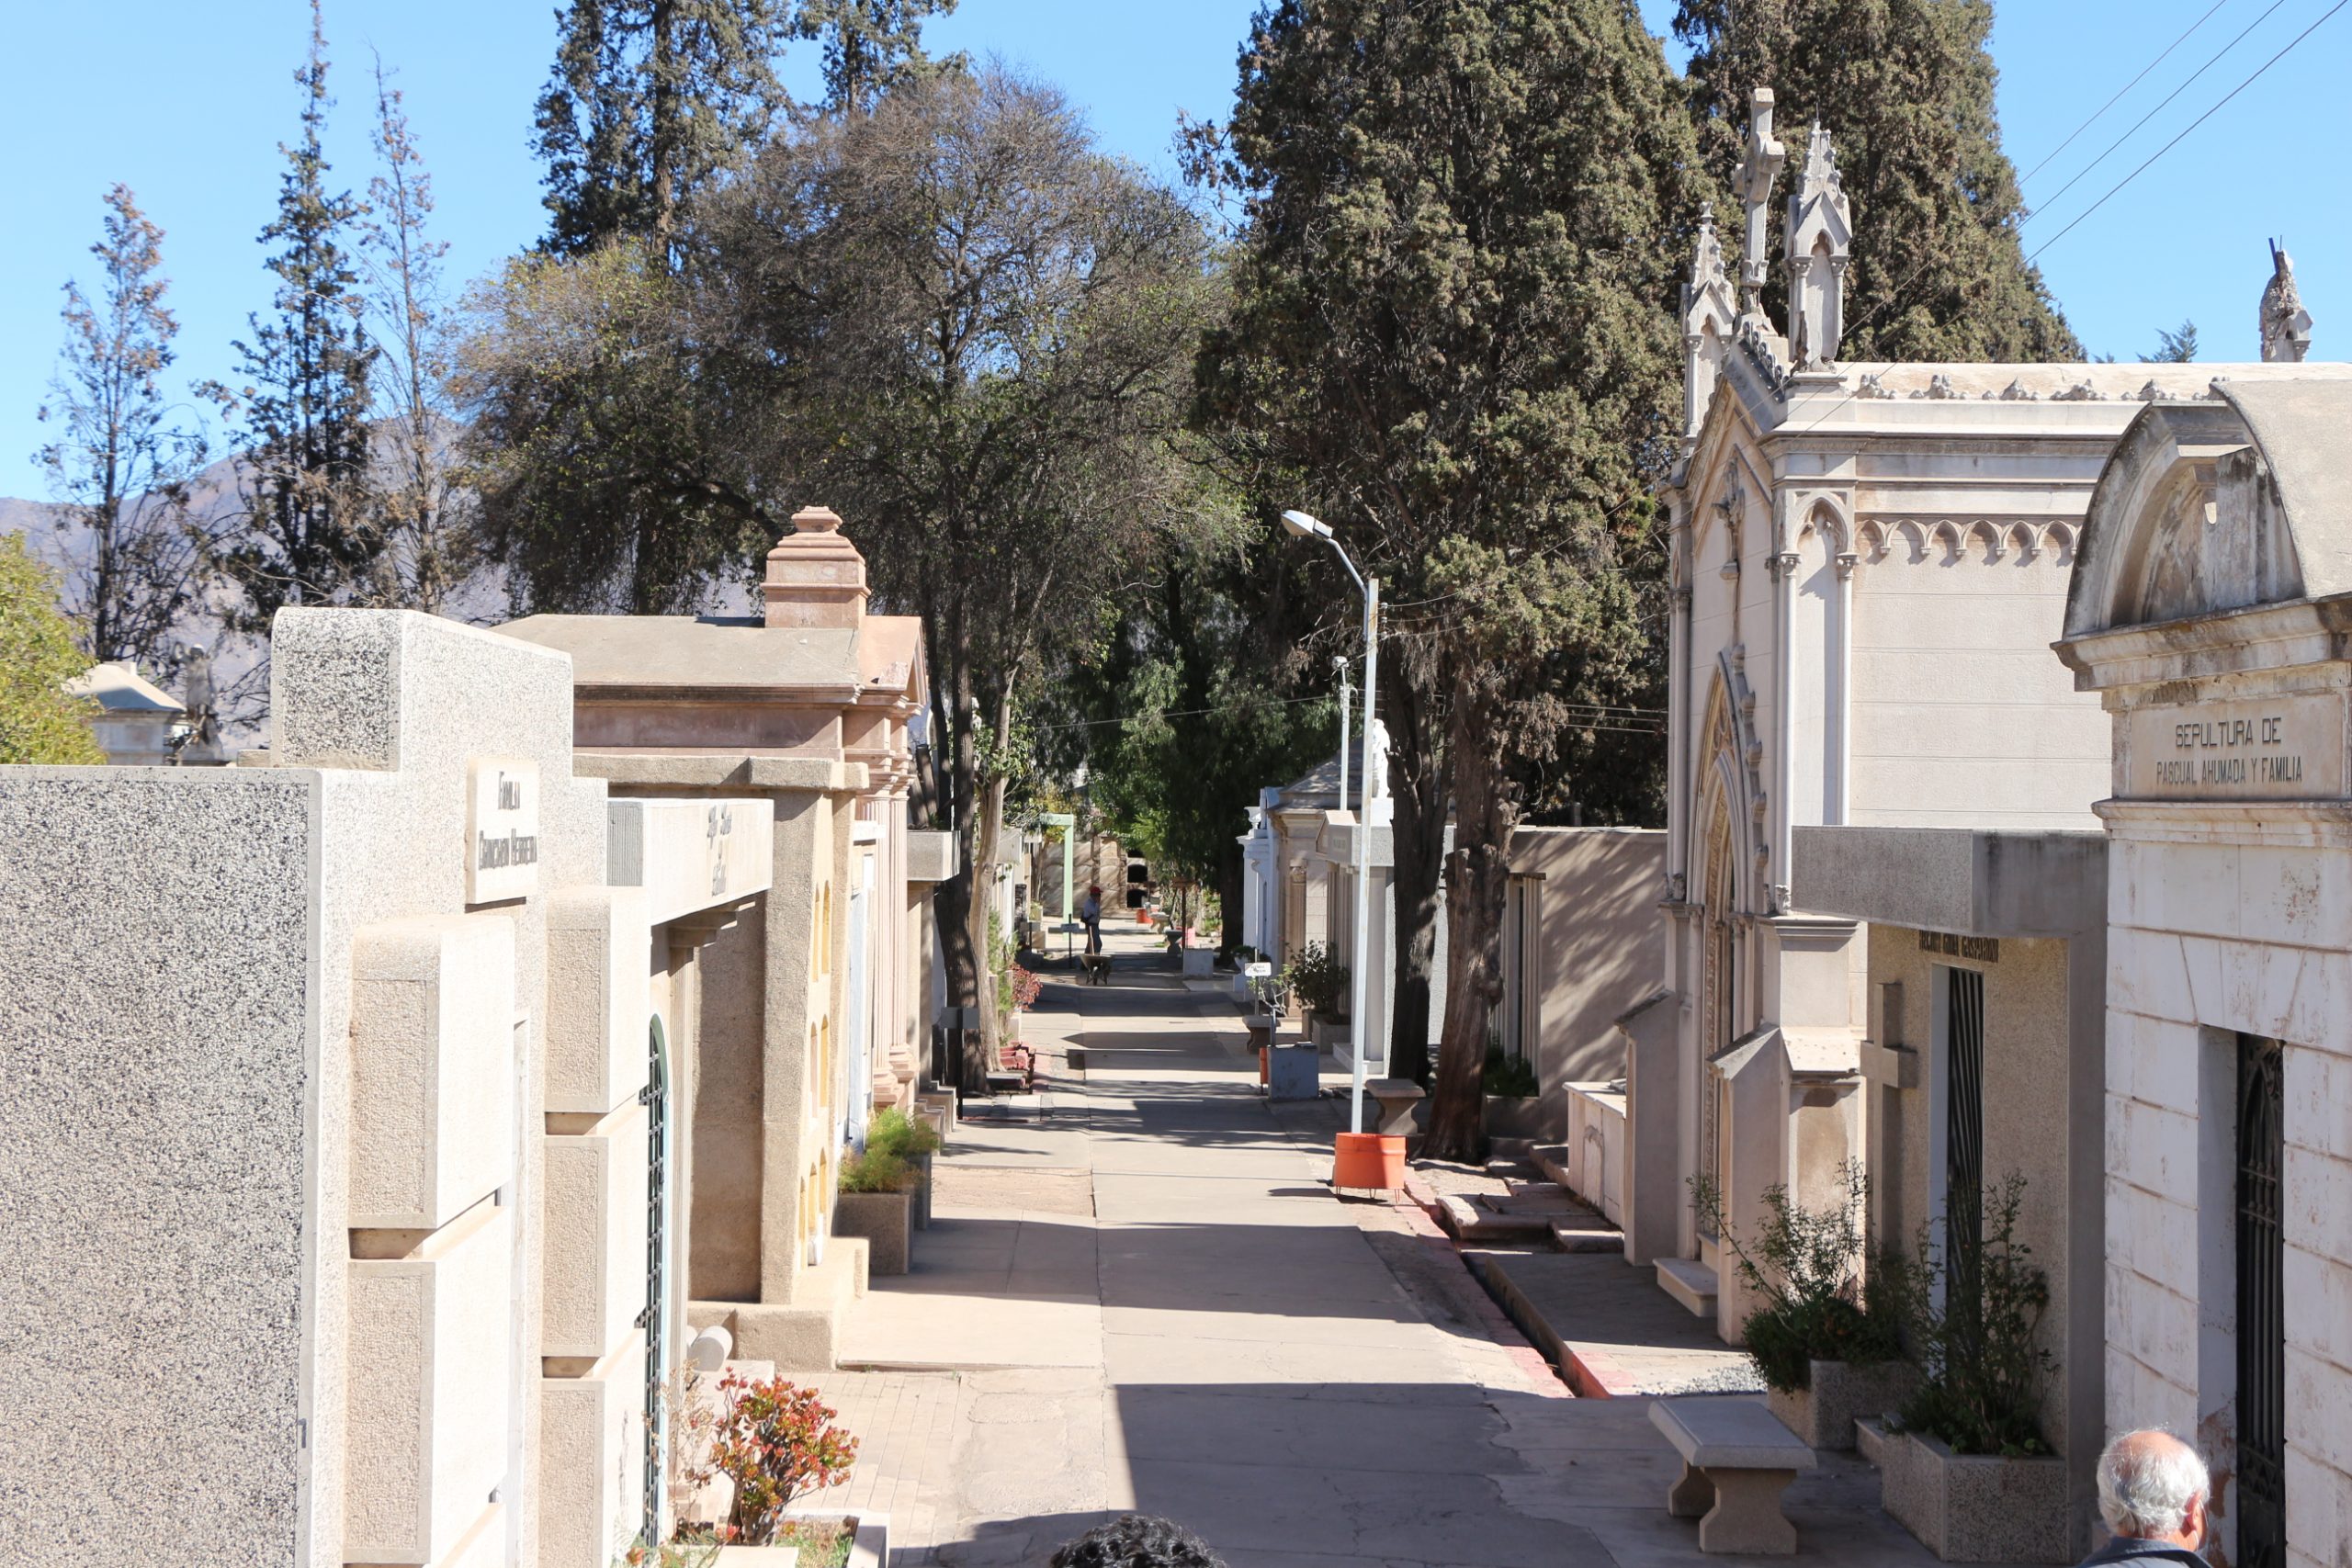 SAN FELIPE: Cementerio Municipal vuelva a funcionar sólo de lunes a viernes